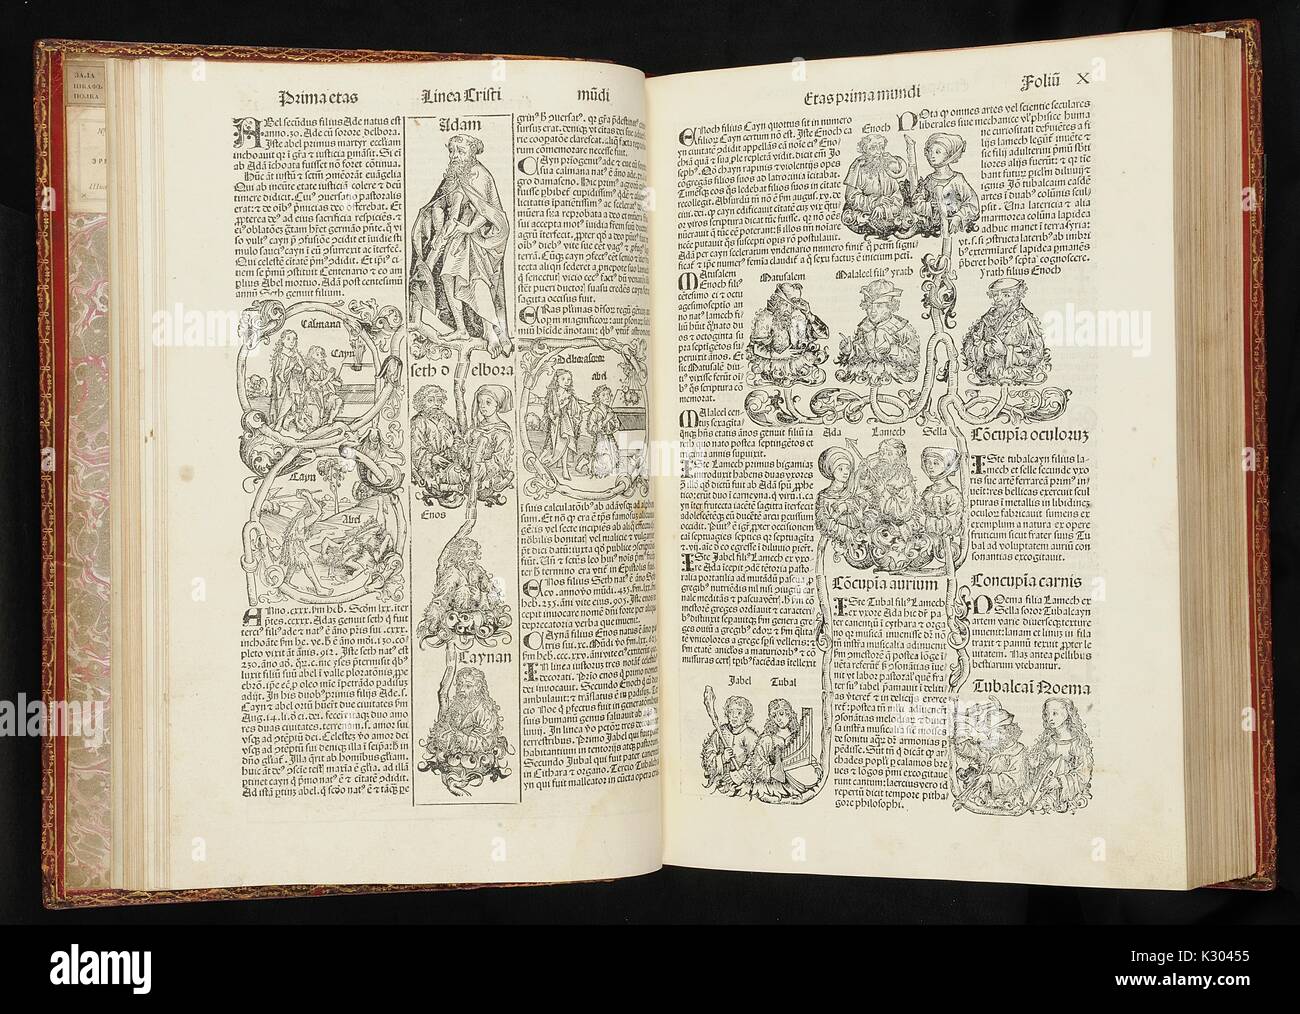 Bilderhandschrift Seite Darstellung der Genealogie von Adam aus dem späten 15. Jahrhundert Latein Buch, 1480. Stockfoto